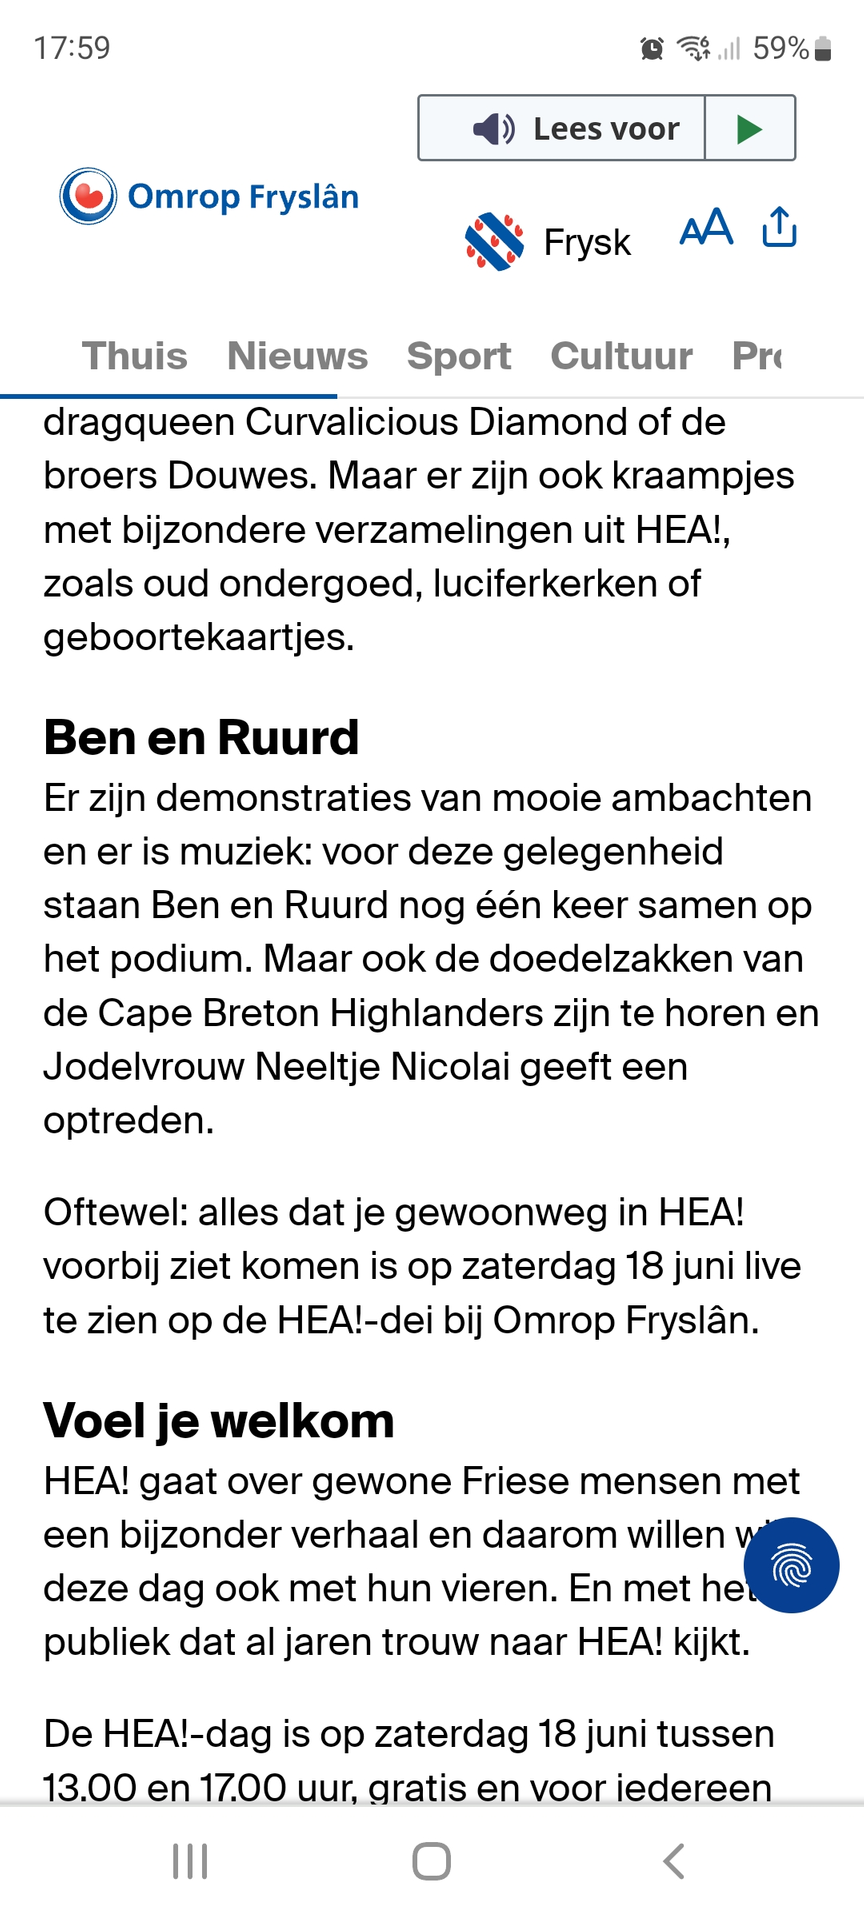 www.dumpert.nl